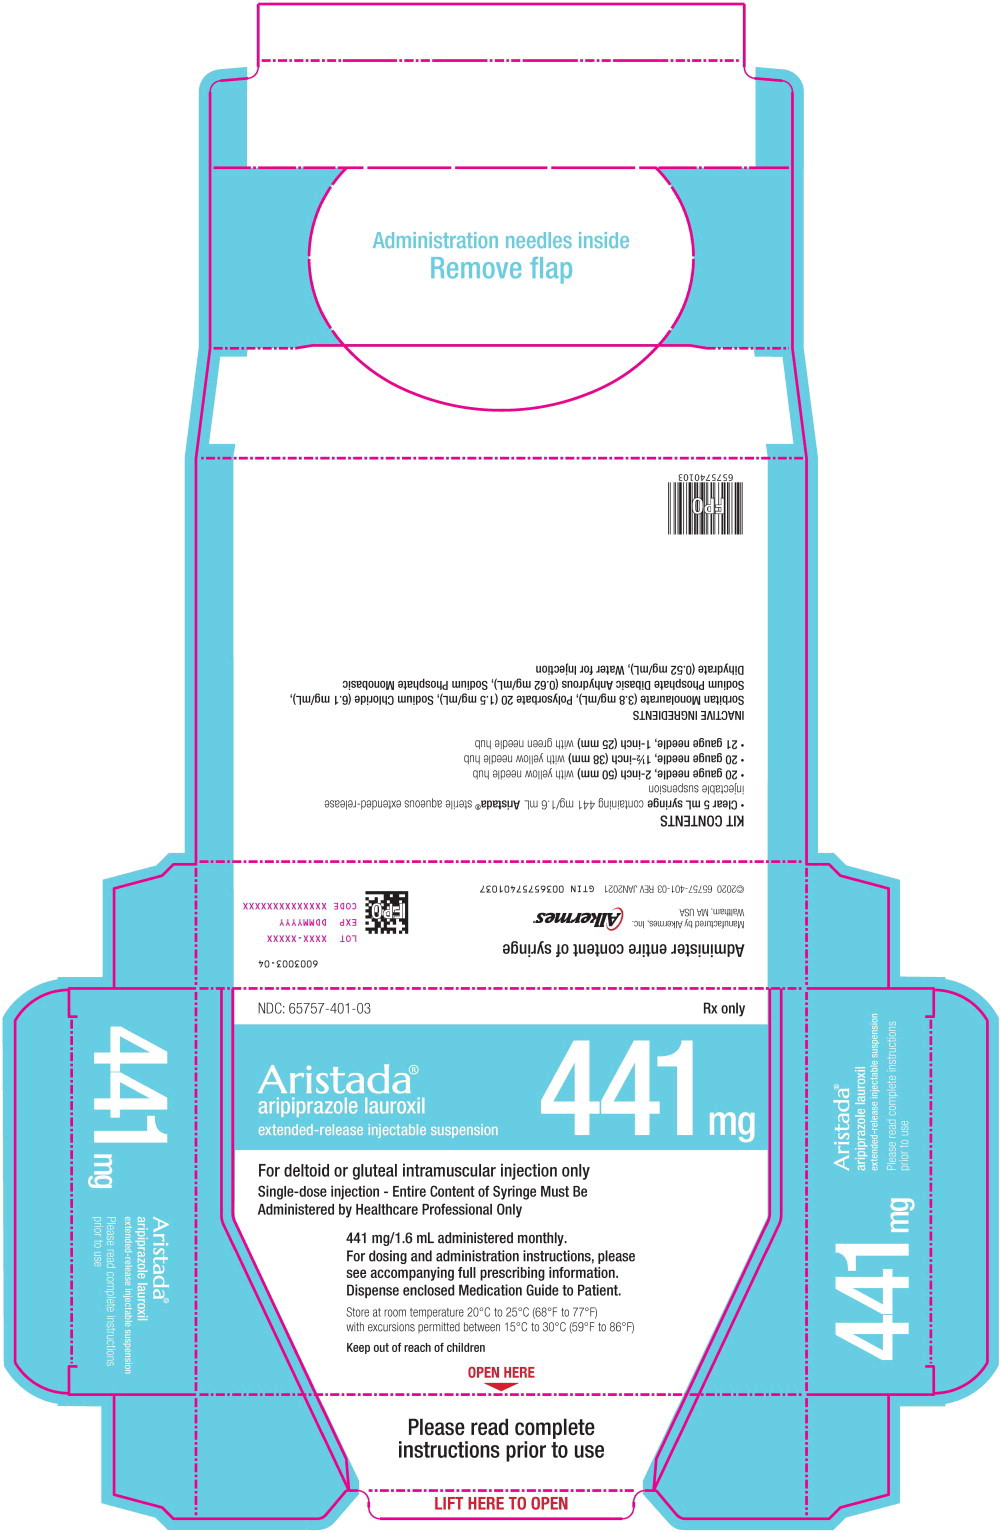 Principal Display Panel - 441 mg/1.6 mL Carton Label
